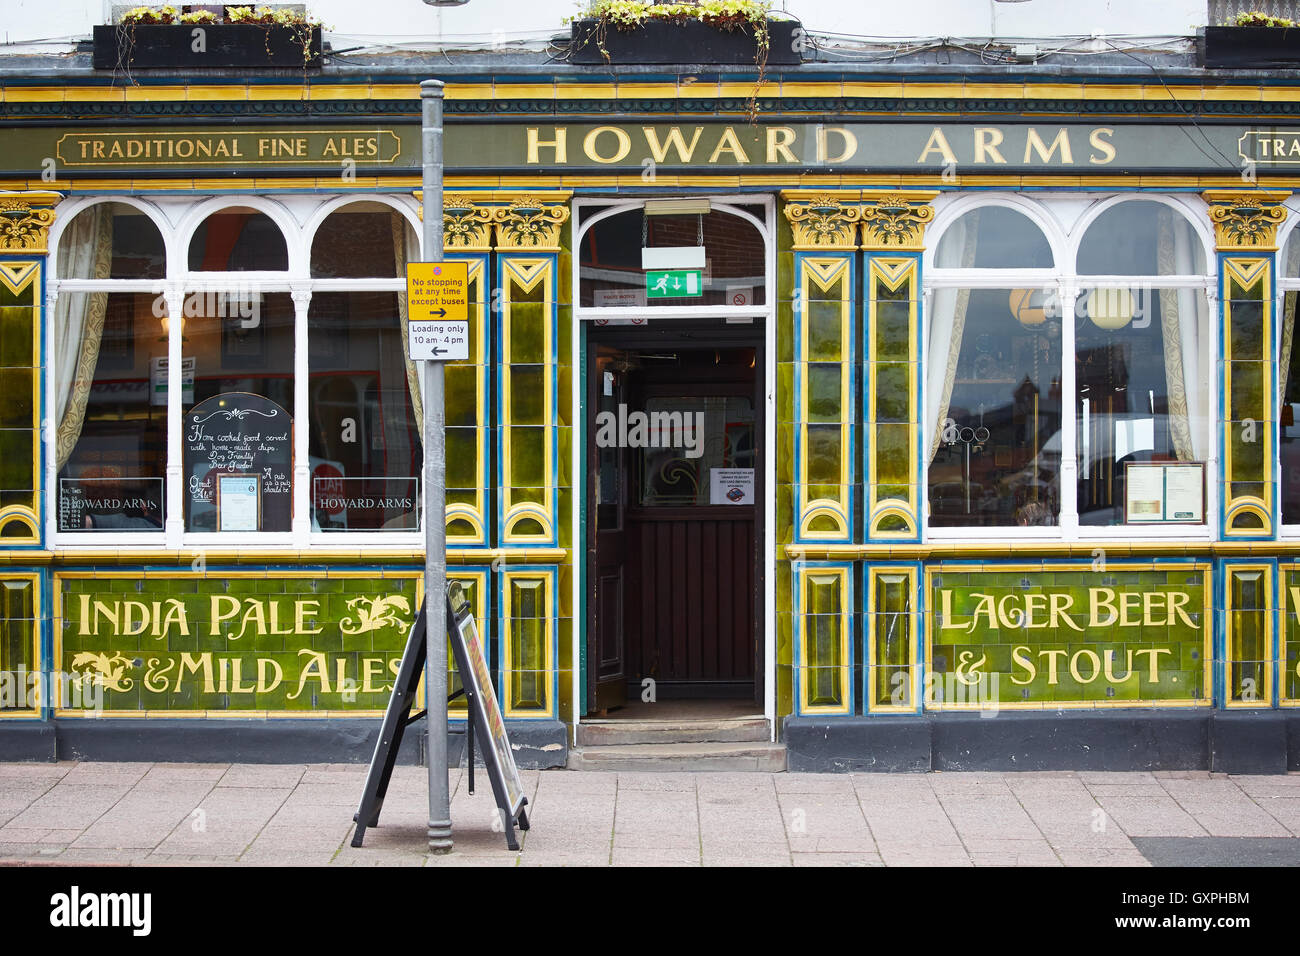 Fliesen traditionelle uk Pub vorne außen Carlisle, Cumbria Attraktivität Keramik Glanz dekorativ verziert Howard Arme grün Stockfoto